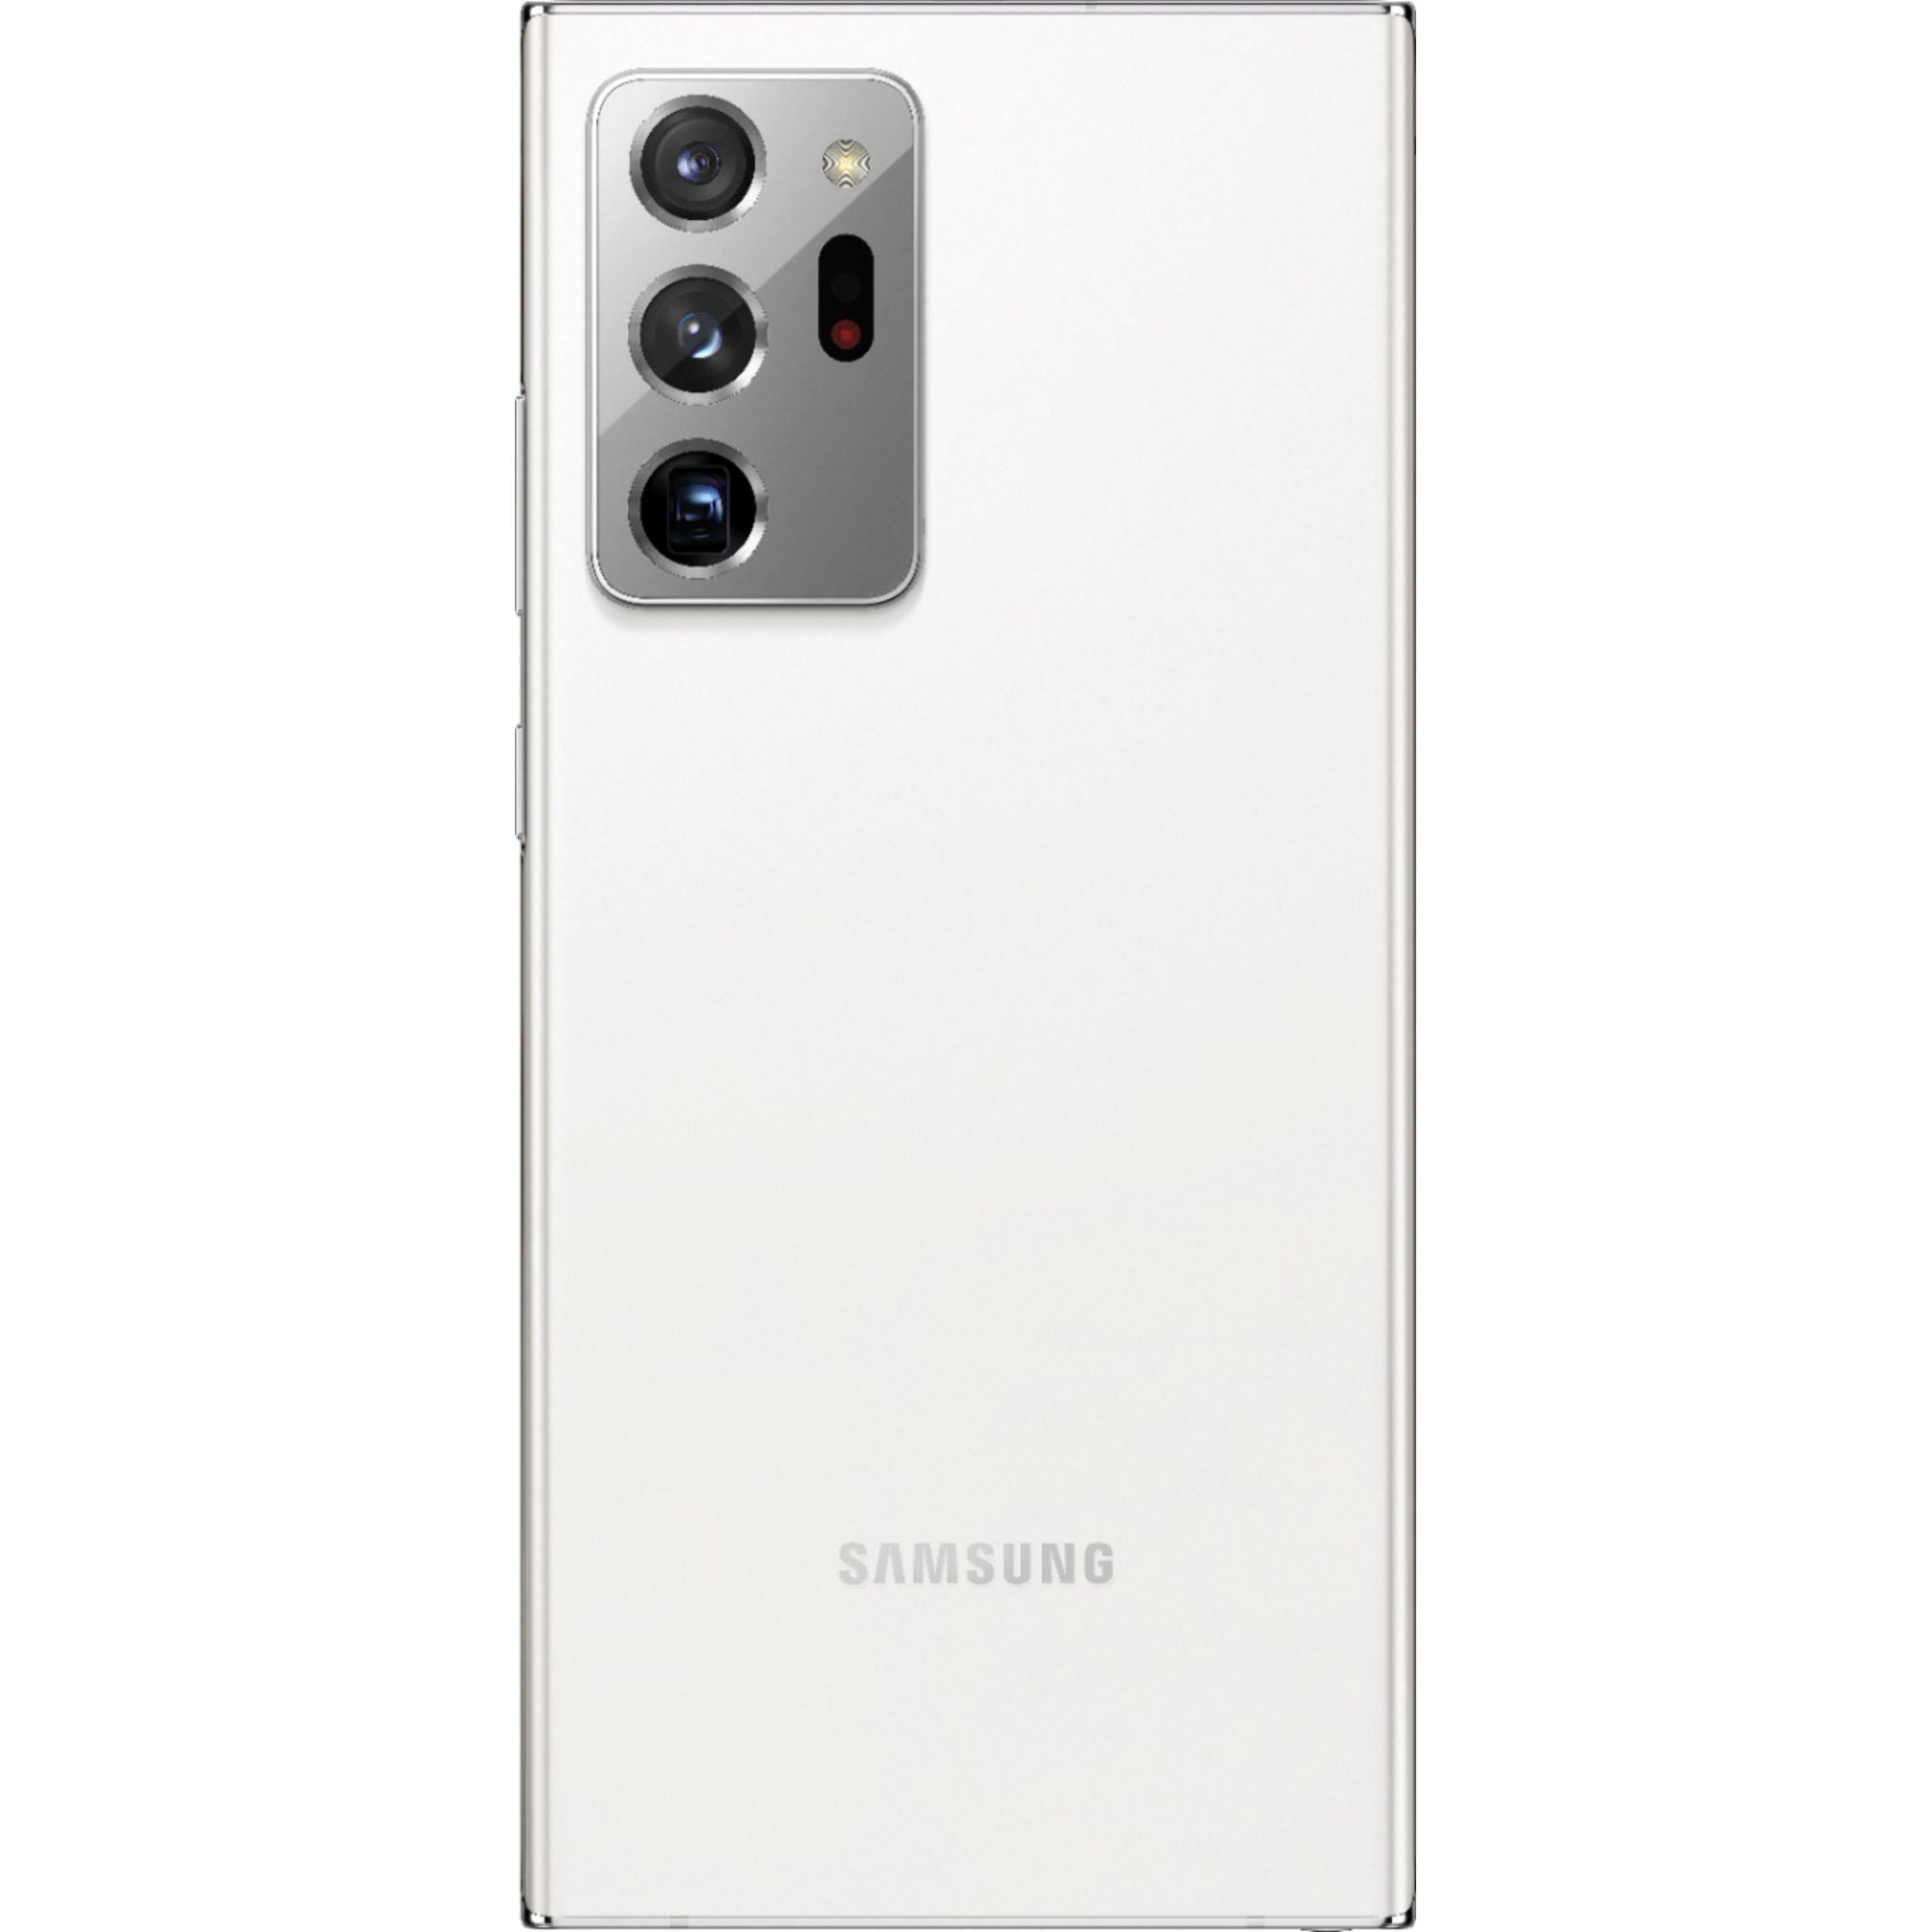 Samsung Galaxy Note20 Ultra N985F 256GB Hybrid Dual SIM Unlocked